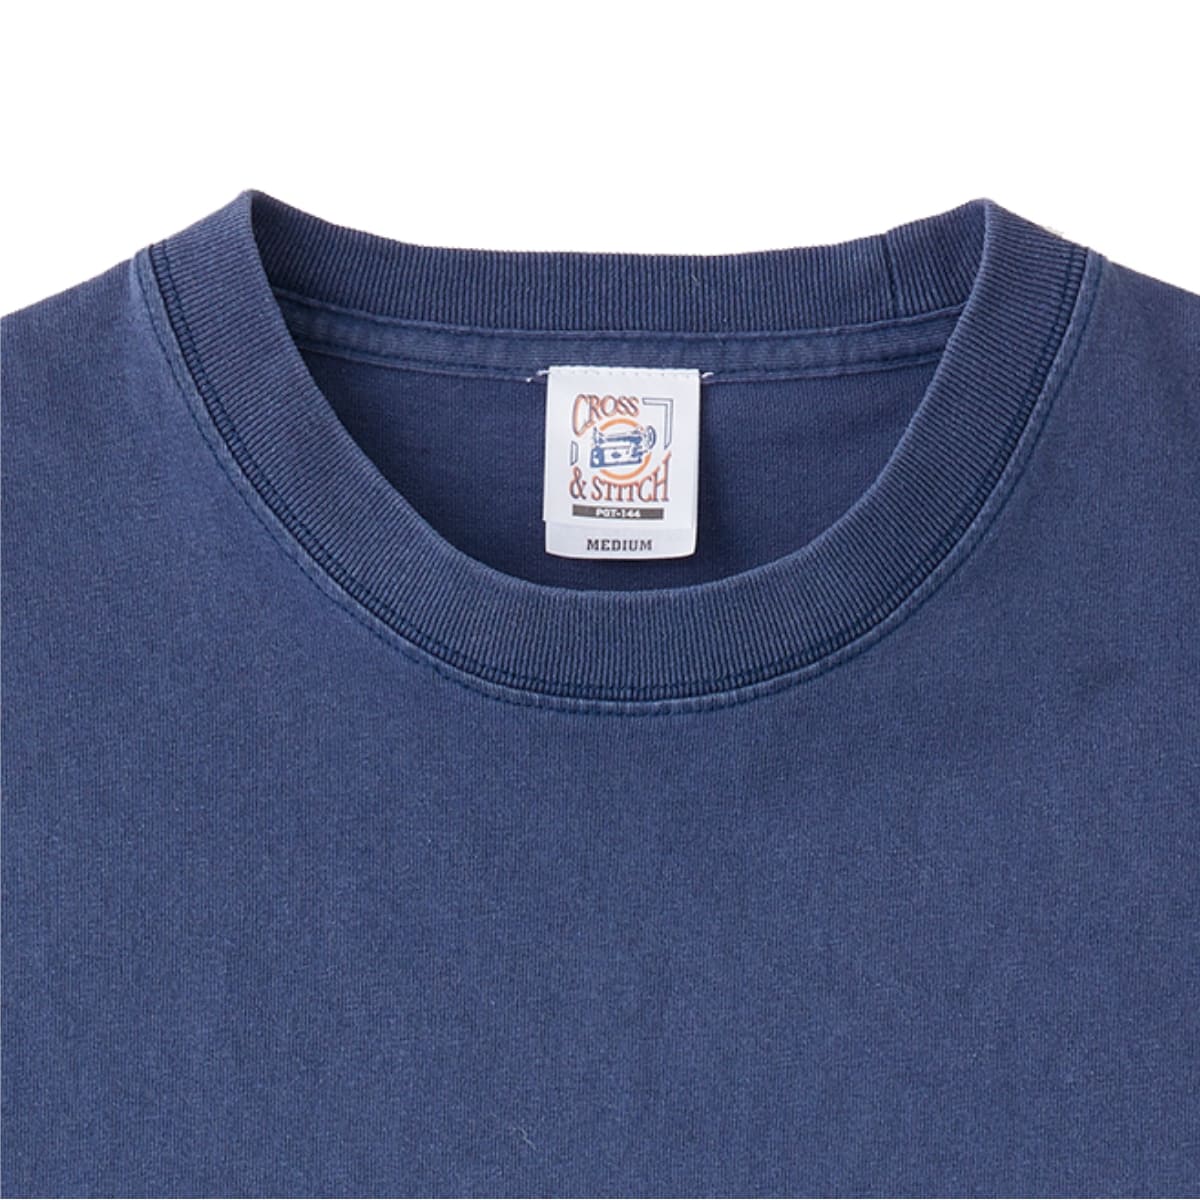 ピグメントTシャツ | メンズ | 1枚 | PGT-144 | Pナチュラル